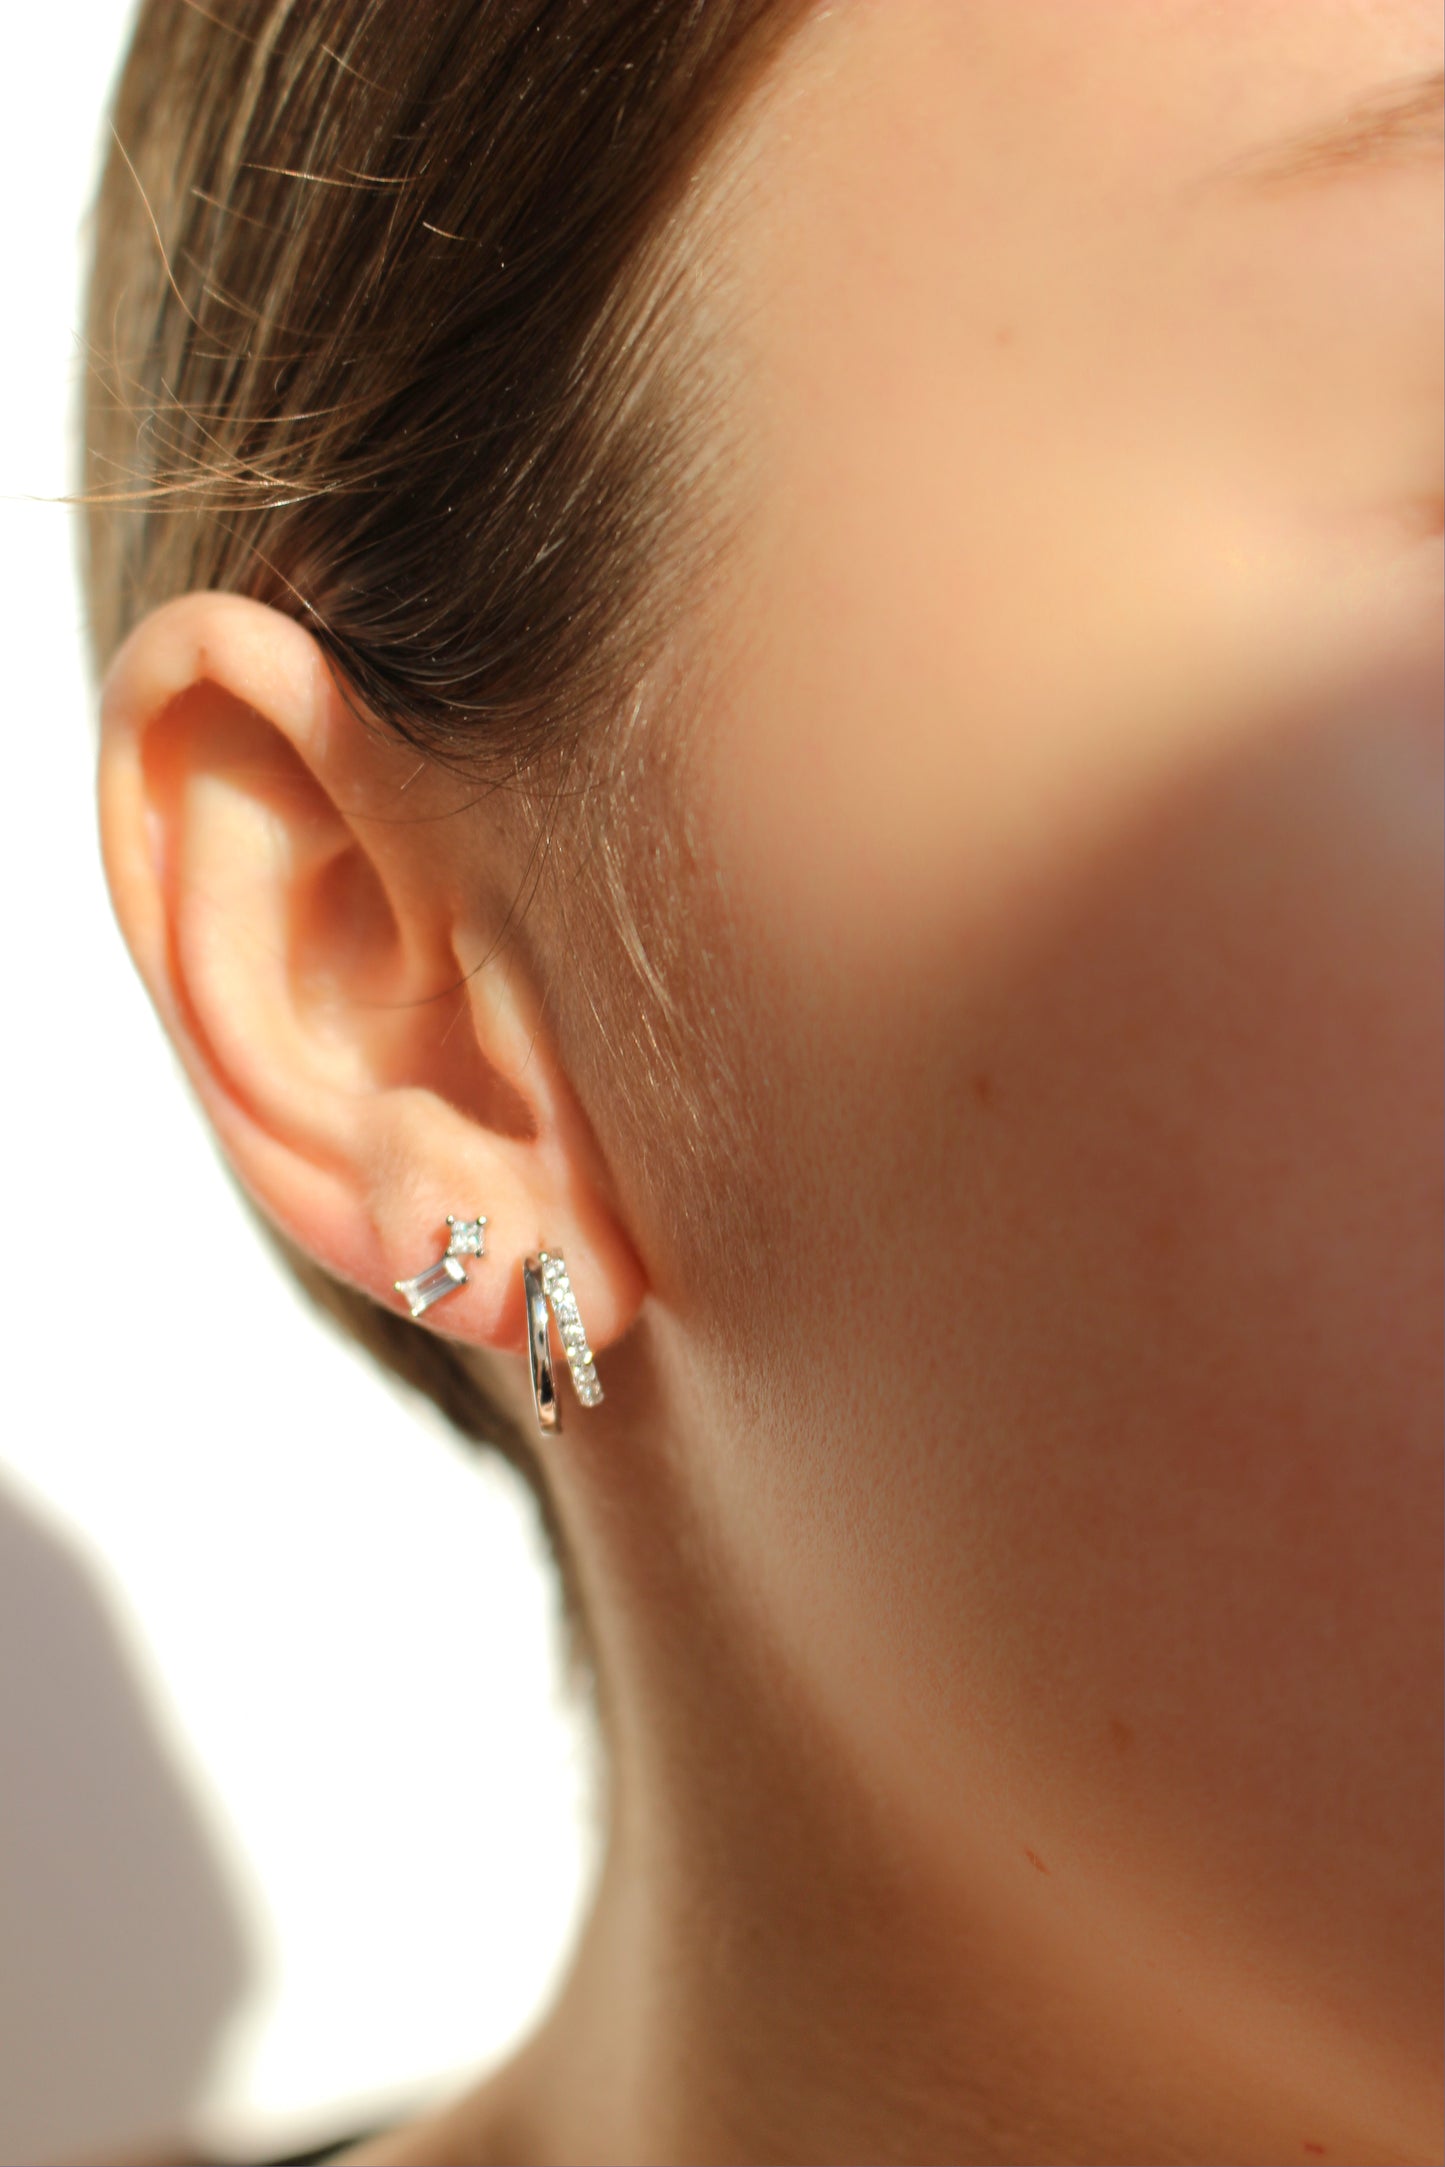 18k Gold Vermeil WATERPROOF Stud Earrings ∙ Meets American standards ∙ Baguette Earrings ∙ Minimalist Cartilage Stud ∙ AAAAA Cubic Zirconia